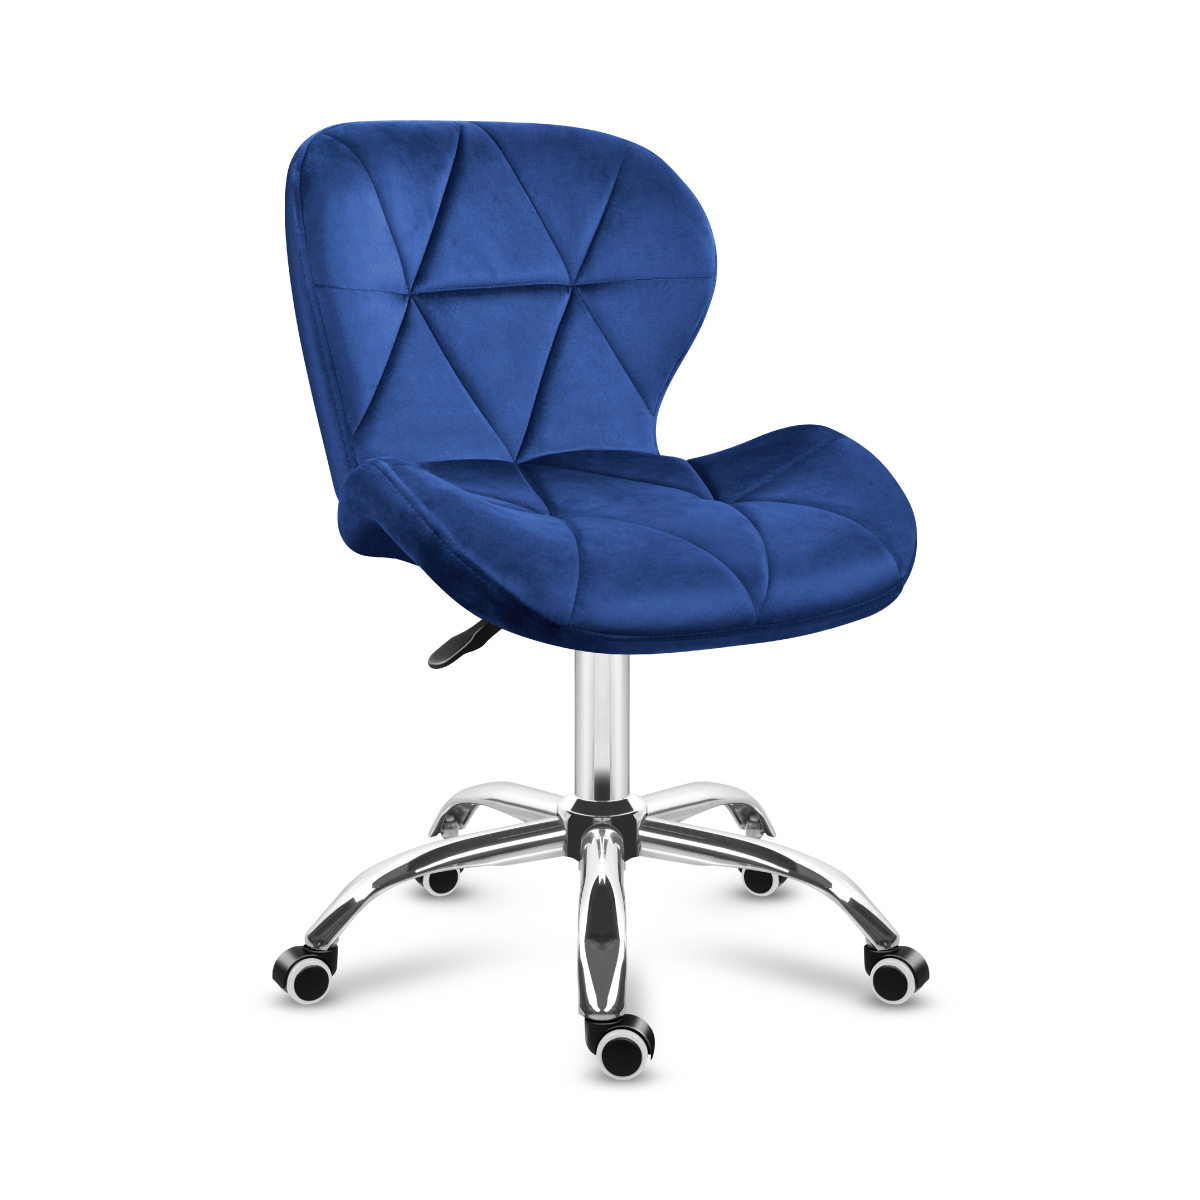 Mark Adler Future 3.0 Navy blue slant office chair